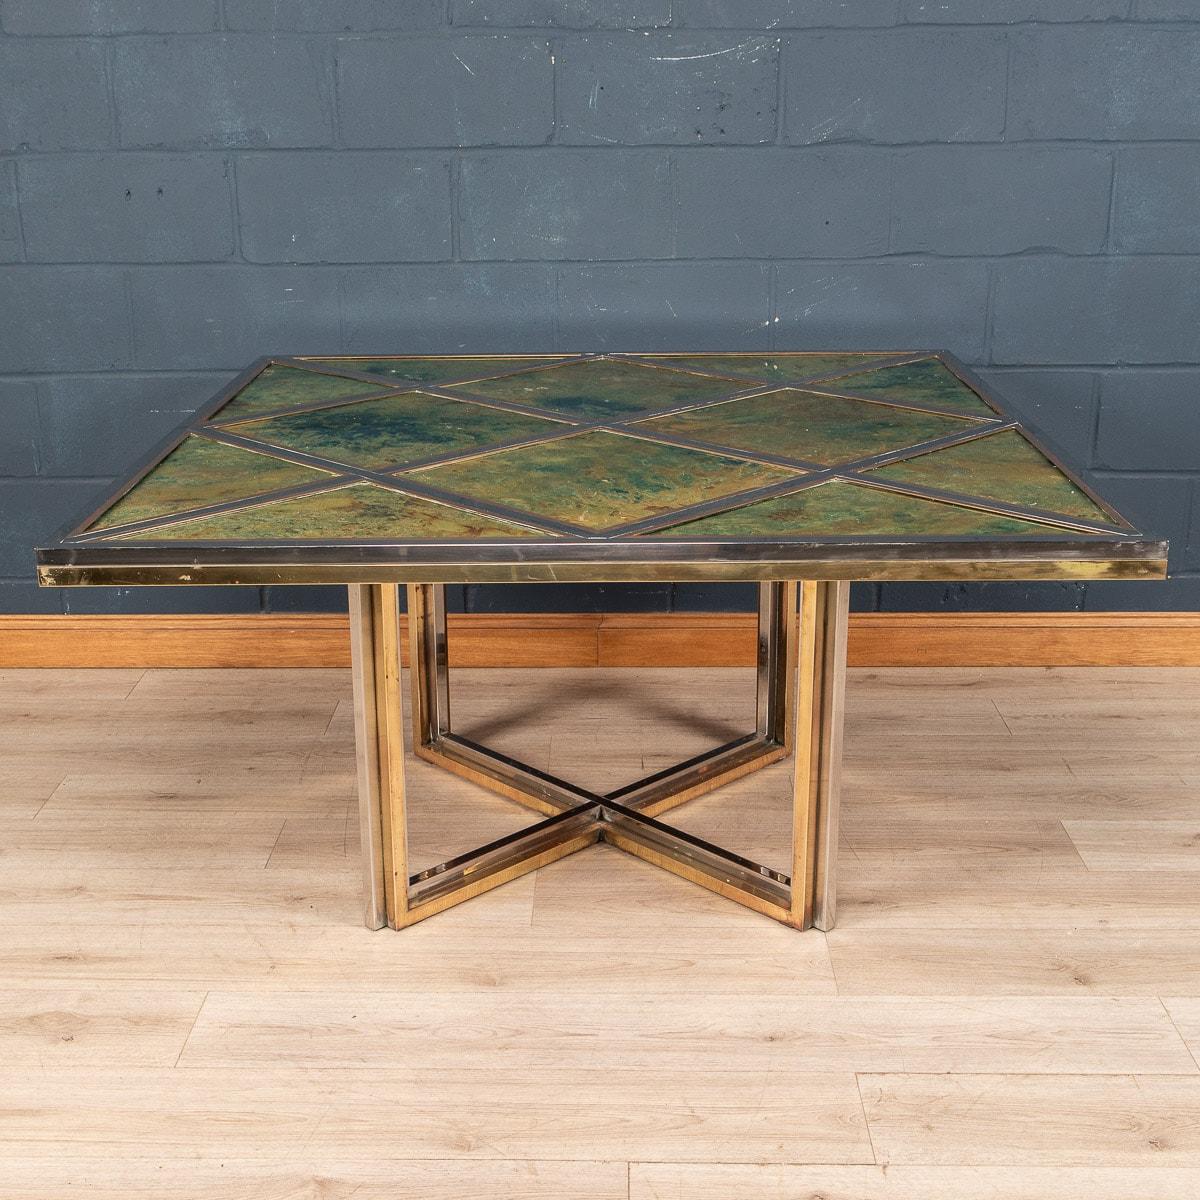 Ein beeindruckender Esstisch oder Mitteltisch, entworfen von Romeo Rega für Metalarte, hergestellt in Italien in den 1970er Jahren. Die Struktur des Tisches besteht vollständig aus Messing und Chrom, die Platte aus Glasfliesen mit